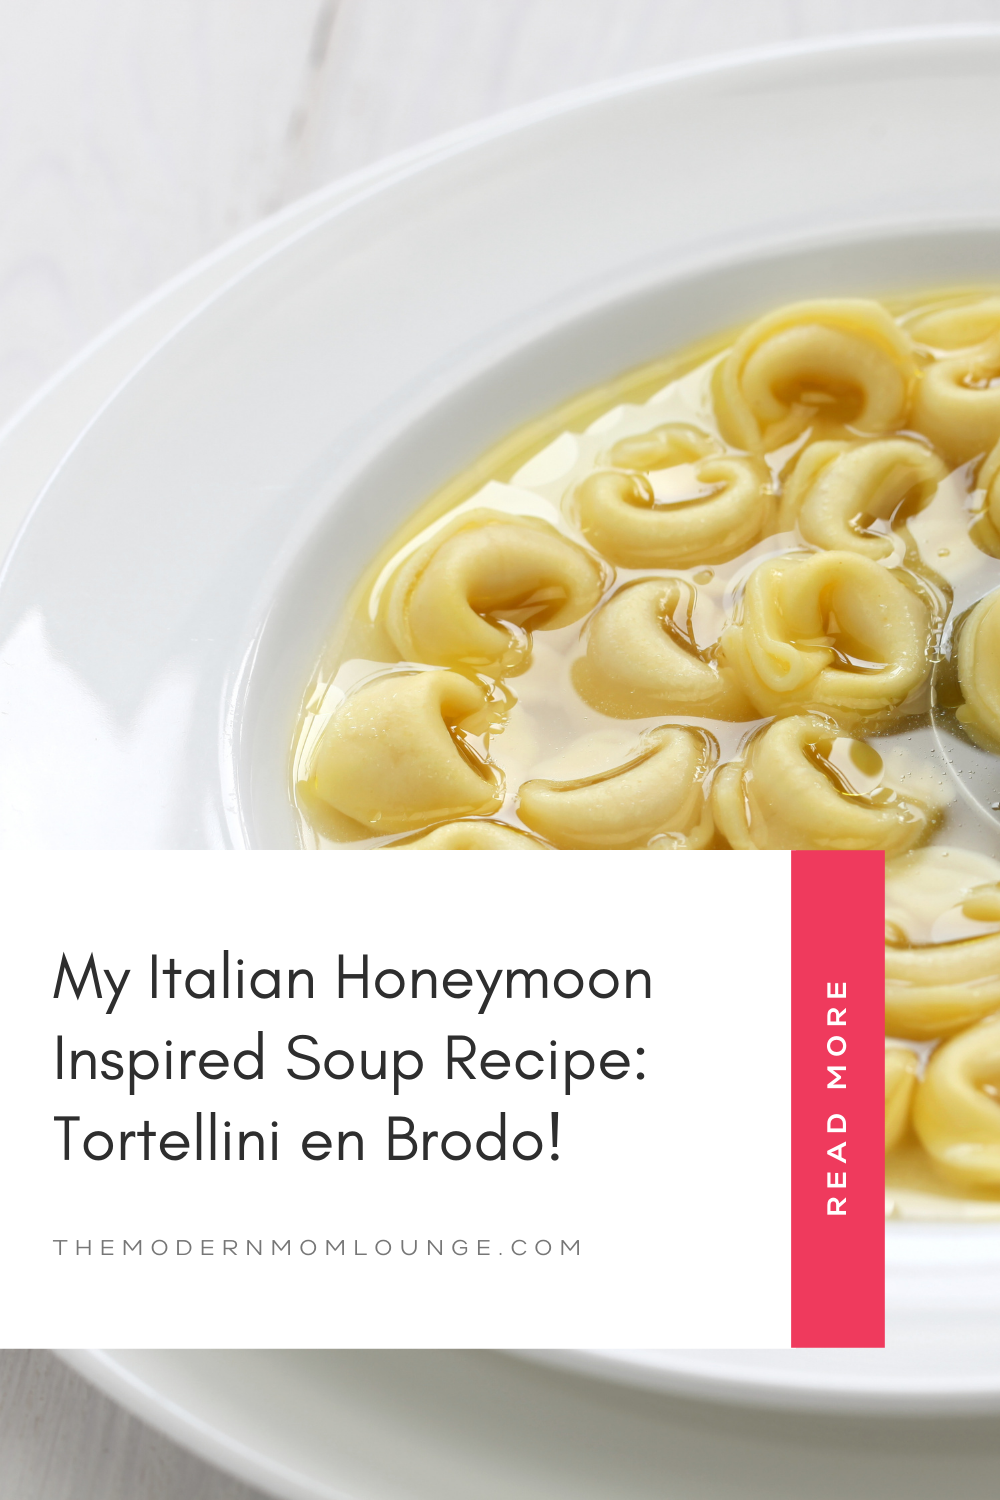 My Italian Honeymoon Inspired Soup Recipe: Tortellini en Brodo!